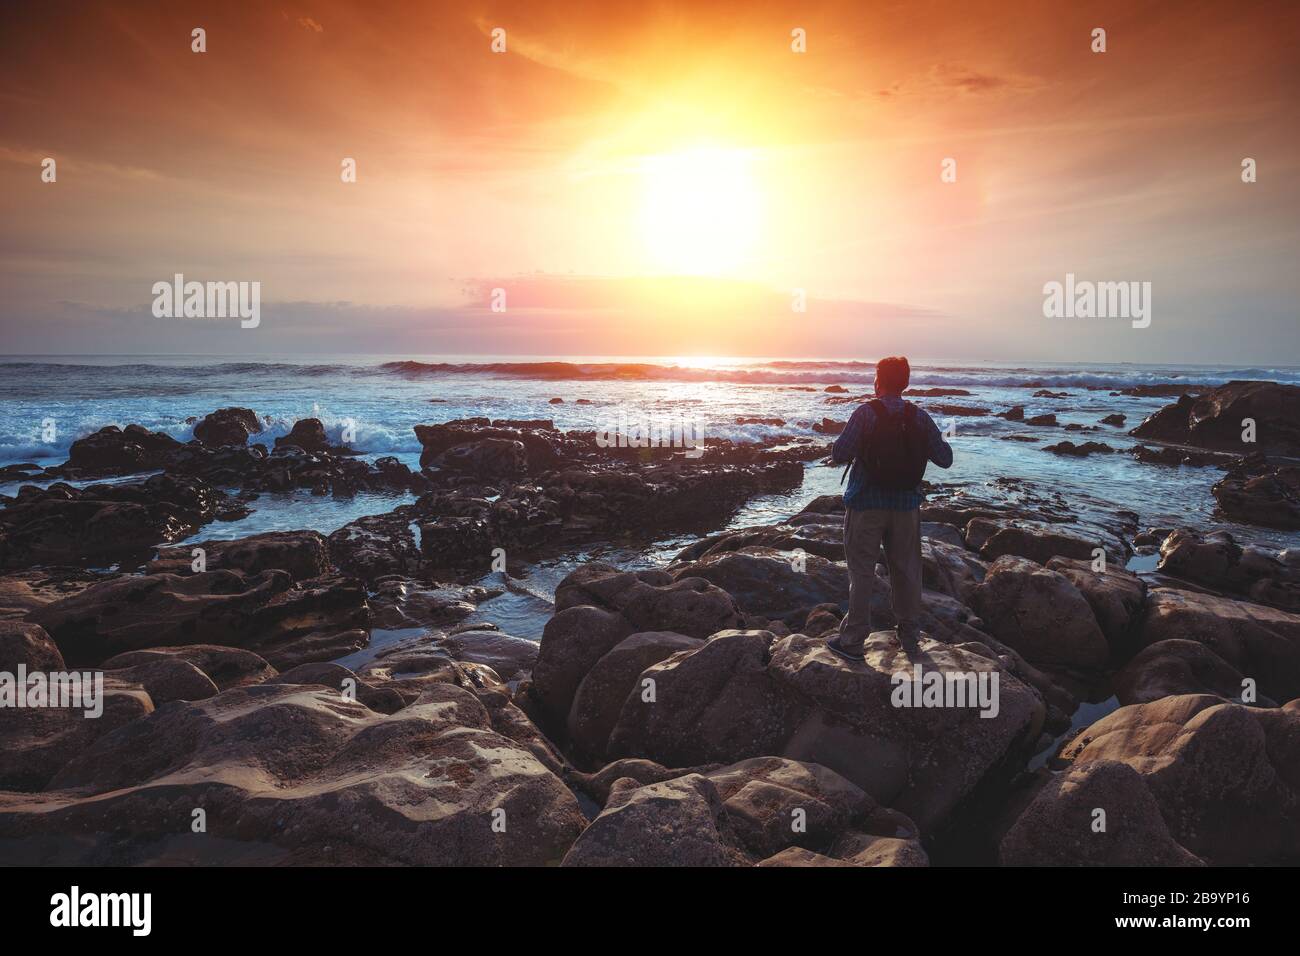 Am Abend seekapern. Die felsige Küste. Silhouette eines Mannes am Strand, der den magischen Sonnenuntergang beobachtet Stockfoto